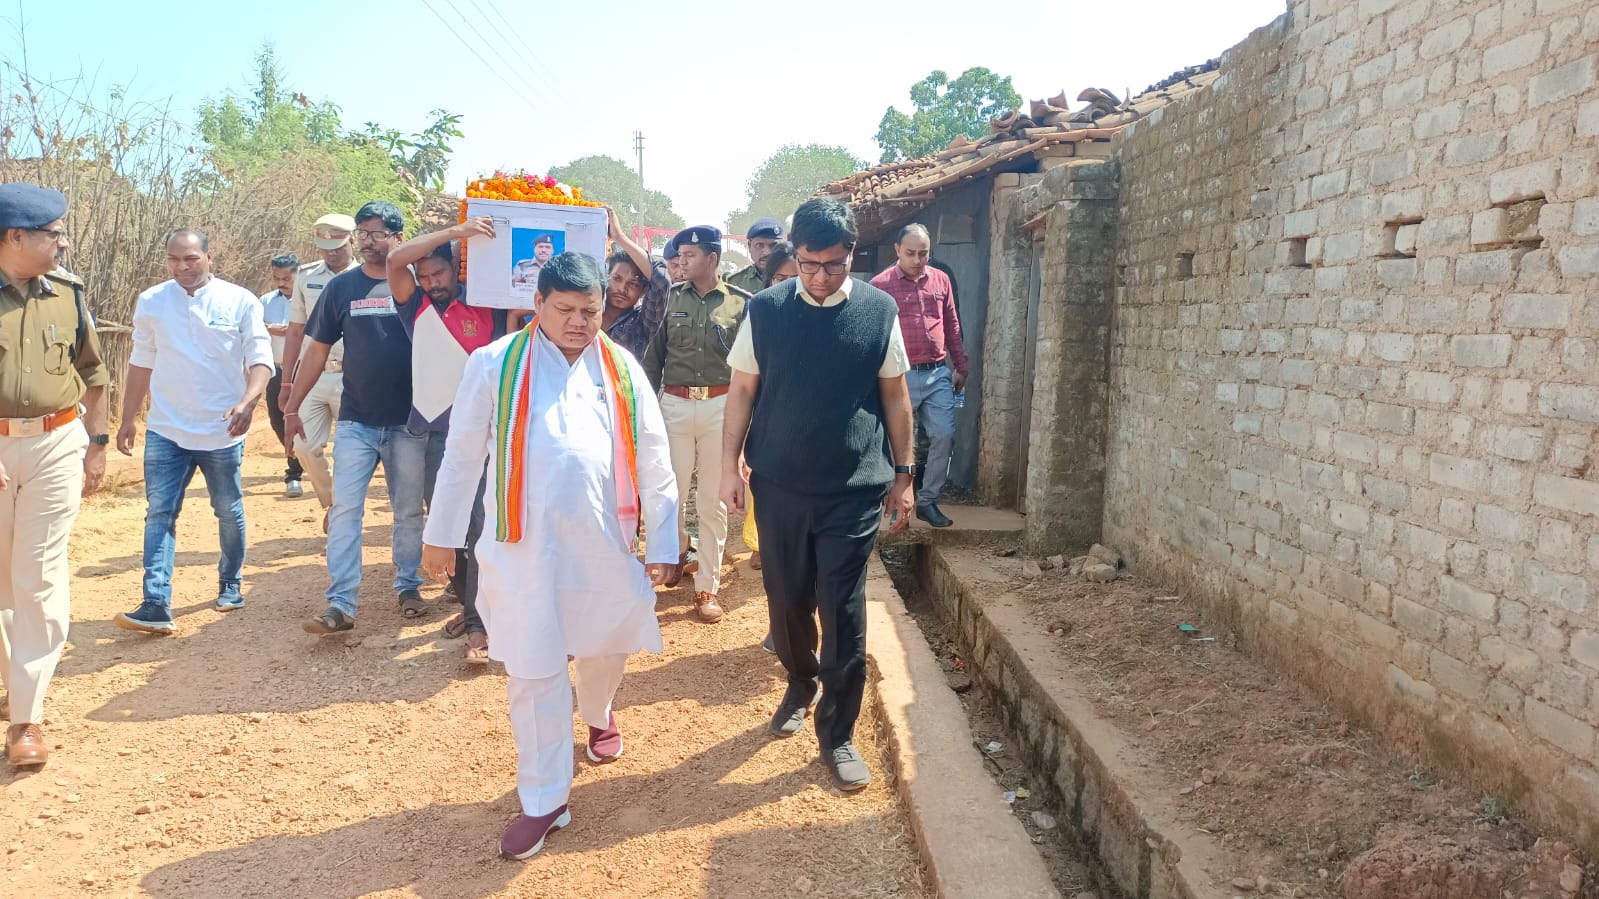 नारायणपुर जिले के बटुम इलाके में सर्च ऑपरेशन के दौरान आईईडी ब्लास्ट में शहीद संजय लकड़ा का पार्थिव शरीर जशपुर जिले के गृहग्राम पहुंचा